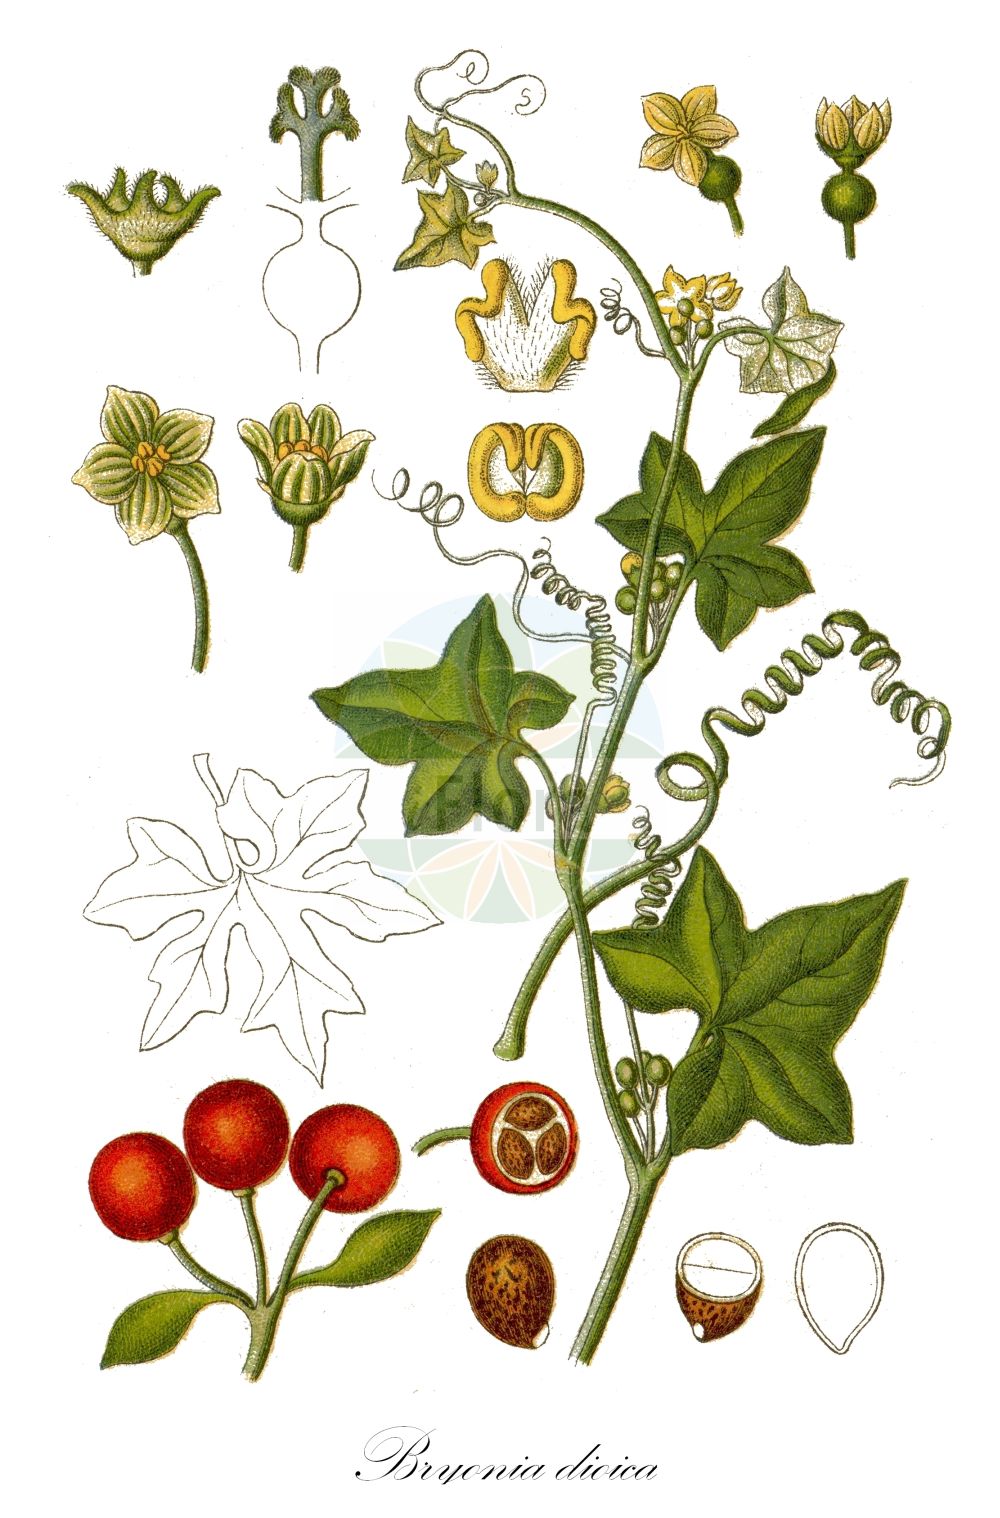 Historische Abbildung von Bryonia dioica (Rotfrüchtige Zaunrübe - White Bryony). Das Bild zeigt Blatt, Bluete, Frucht und Same. ---- Historical Drawing of Bryonia dioica (Rotfrüchtige Zaunrübe - White Bryony). The image is showing leaf, flower, fruit and seed.(Bryonia dioica,Rotfrüchtige Zaunrübe,White Bryony,Bryonia digyna,Bryonia dioica,Bryonia sicula,Rotfruechtige Zaunruebe,Rotbeerige Zaunruebe,Rote Zaunruebe,White Bryony,Common Bryony,Cretan Bryony,Red-berried Bryony,Red-berry Bryony,Red Bryony,Bryonia,Zaunrübe,Bryony,Cucurbitaceae,Kürbisgewächse,Cucurbit family,Blatt,Bluete,Frucht,Same,leaf,flower,fruit,seed,Sturm (1796f))